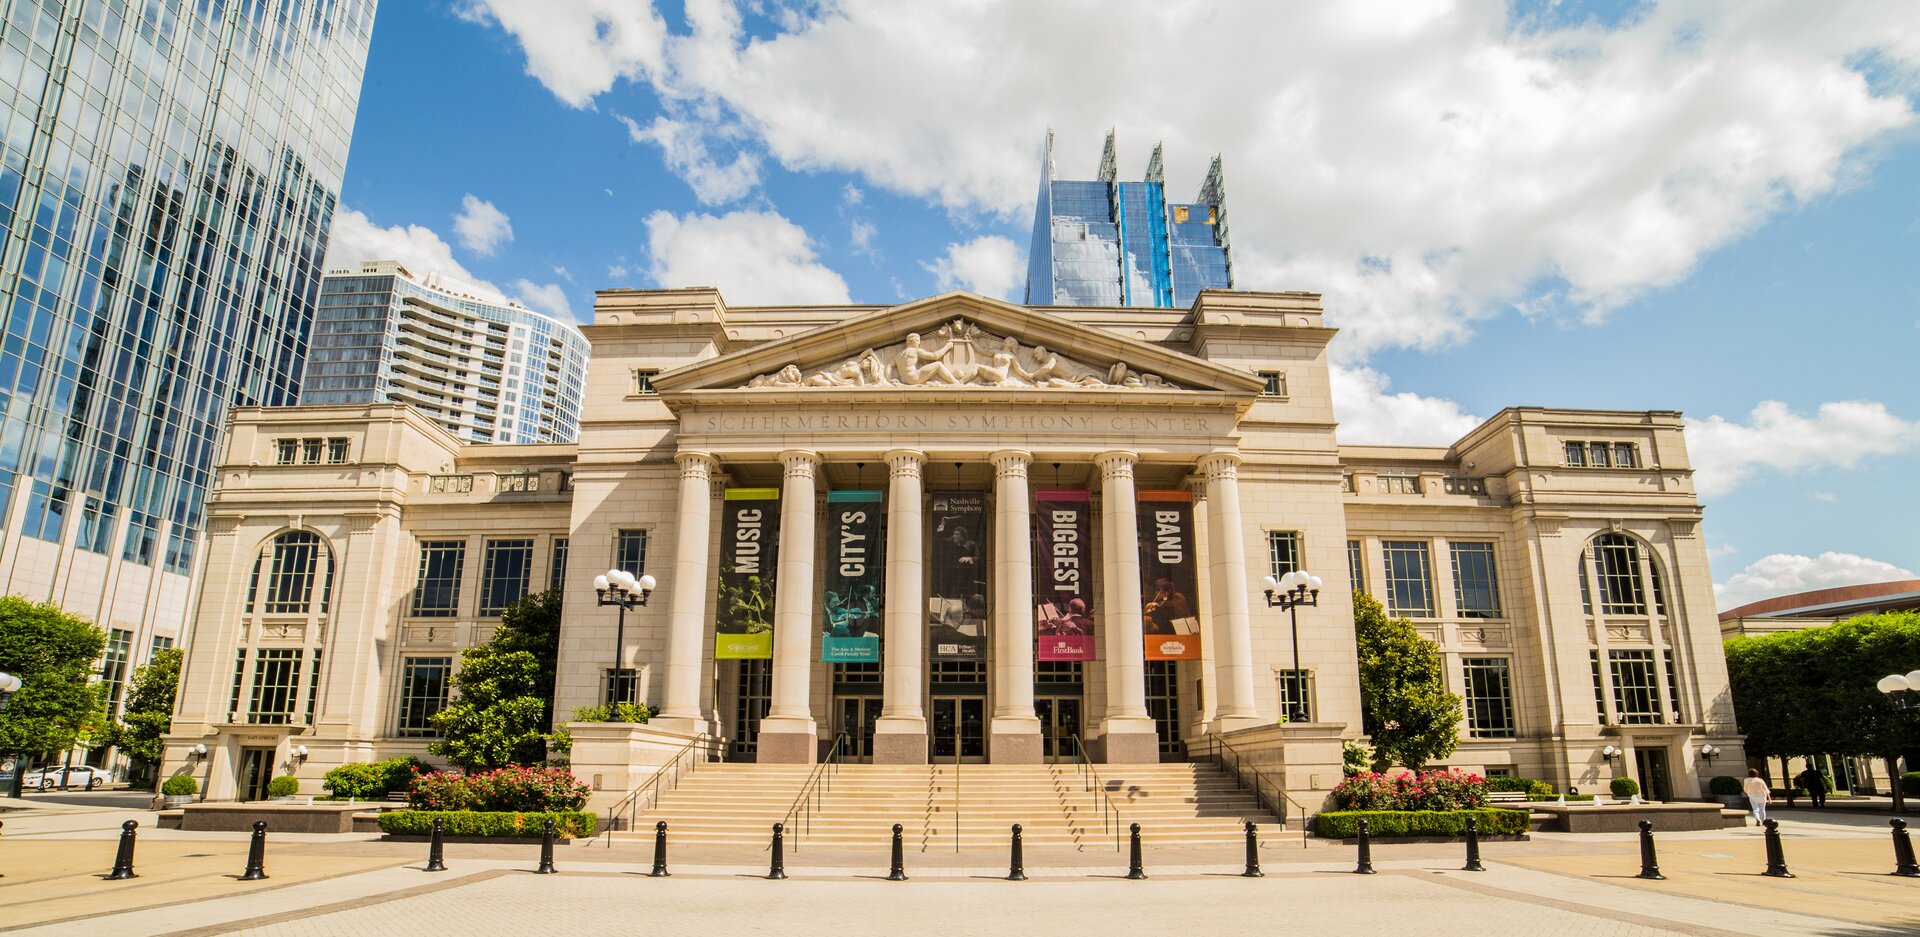 Ilustracja przedstawia Schermerhorn Symphony Center w Nashville w USA. Budynek widoczny jest od frontu. Przed wejściem znajdują się wysokie kolumny. W tle widoczne są nowoczesne, oszklone budynki.